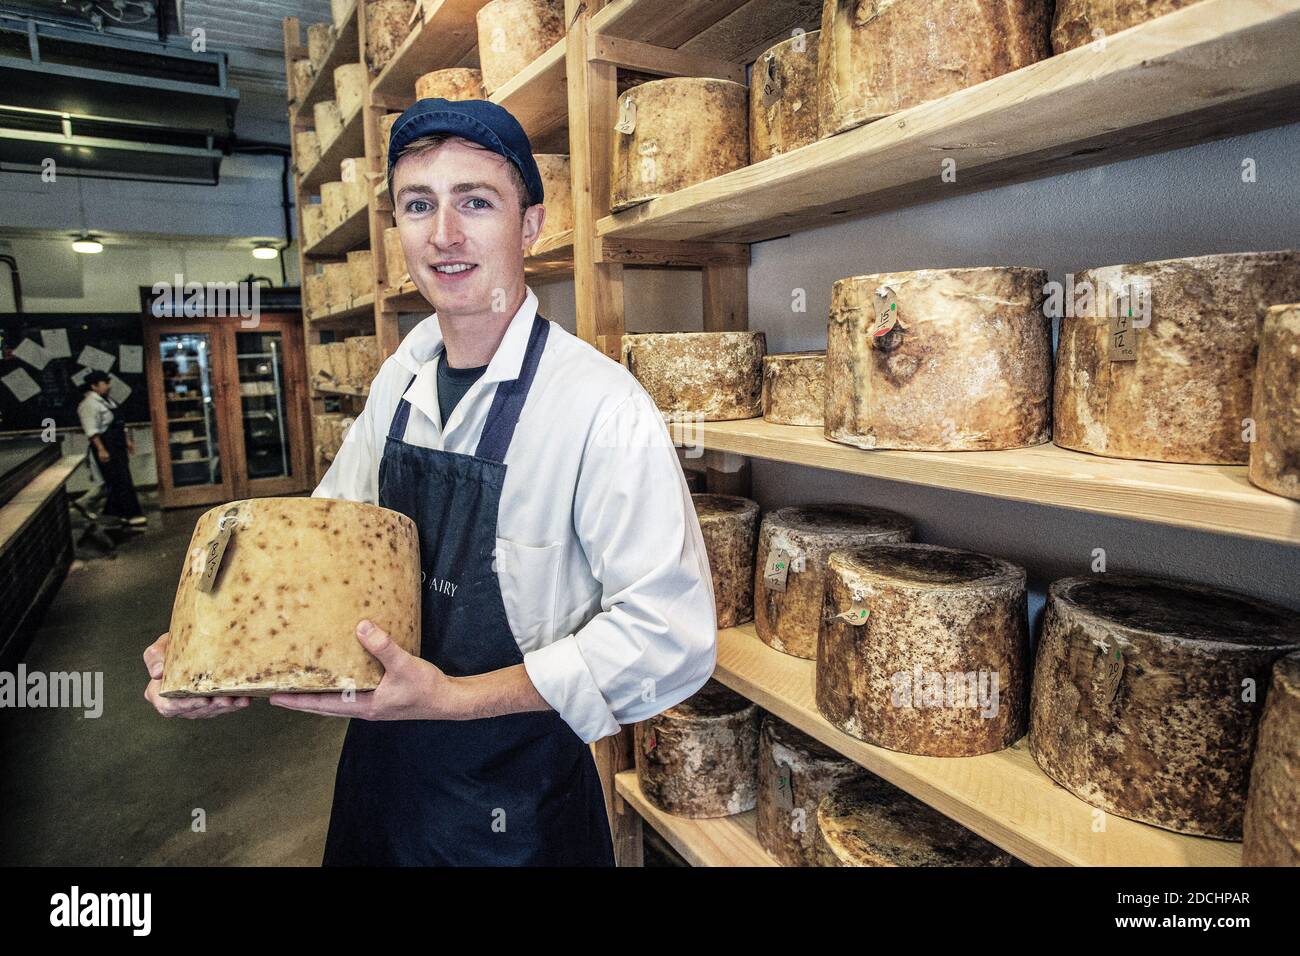 Giovane maschio che detiene un formaggio di dimensioni normali presso la Neal s Yard Dairy al Borough Market di Southwark, Londra, Inghilterra. Foto Stock